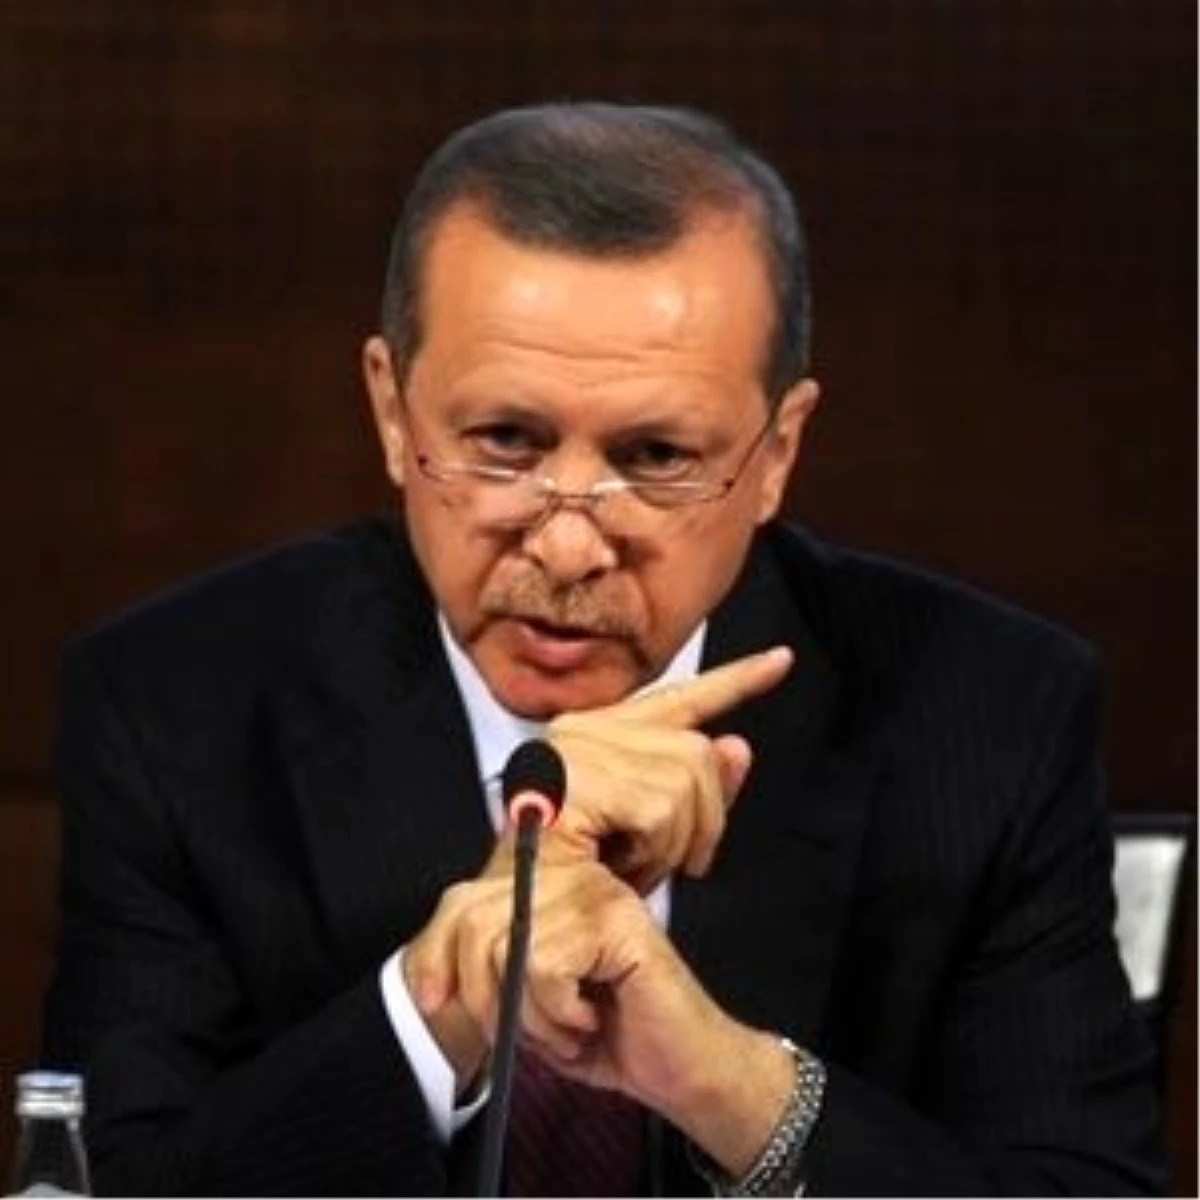 3başbakan Erdoğan: "Haberal Konusunda Bize Düşen Süreci İzlemektir"